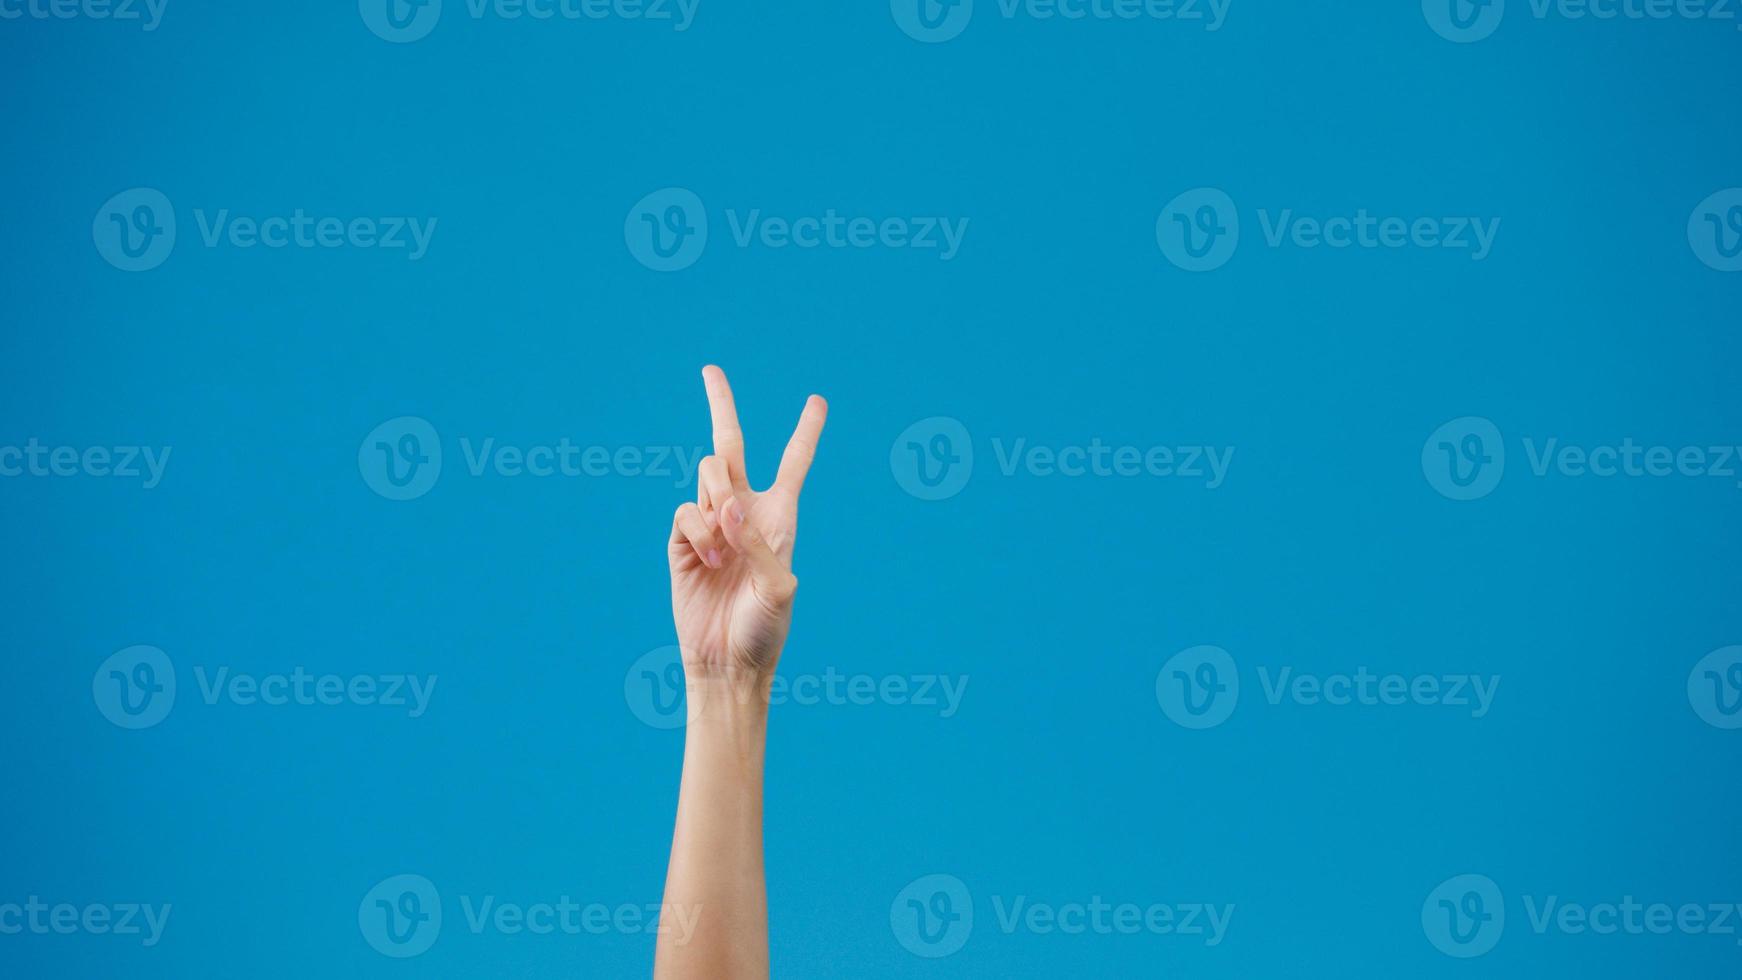 jonge vrouw hand tonen duim omhoog teken met vingers geïsoleerd over blauwe achtergrond in de studio. kopieer ruimte voor het plaatsen van een tekst, bericht voor reclame. advertentiegebied, mock-up promotionele inhoud. foto